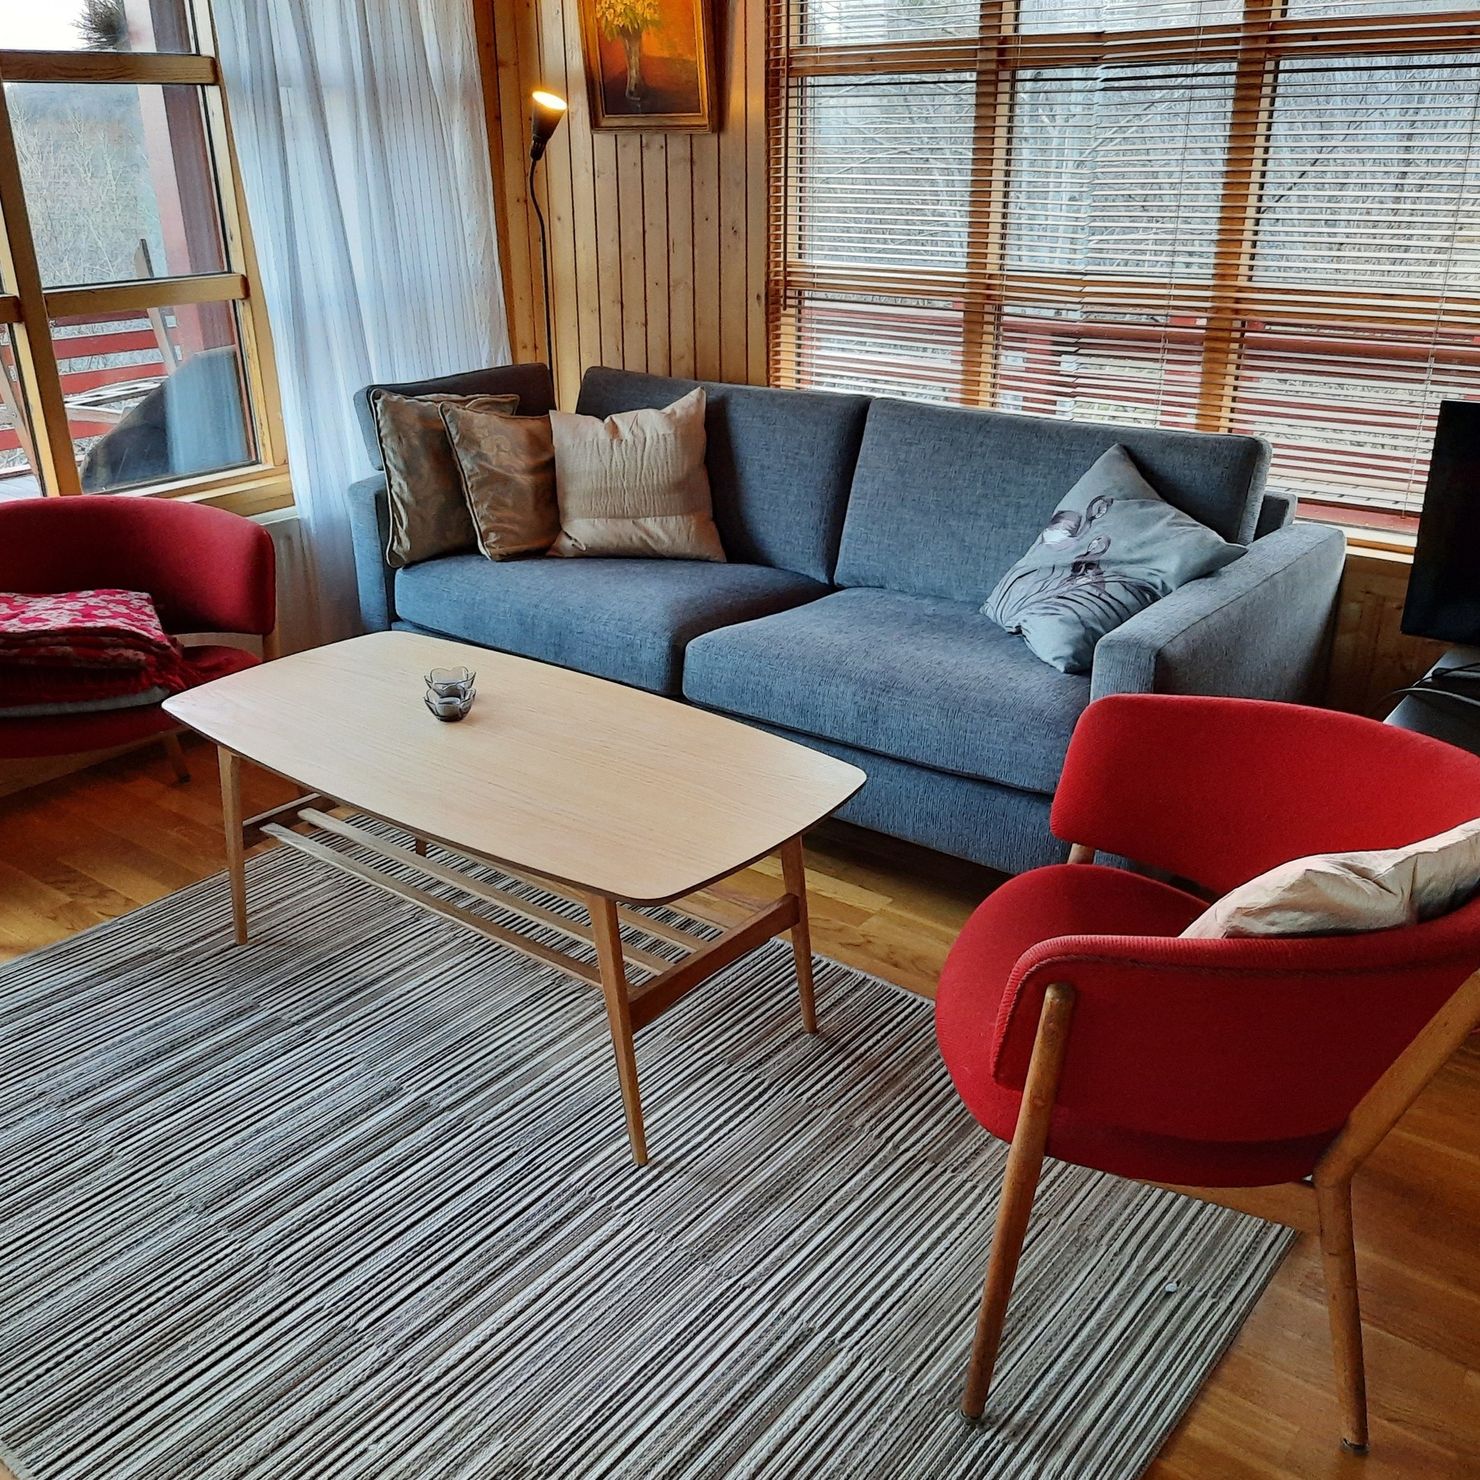 Stylish eingerichteter Wohnbereich im skandinavischen Stil